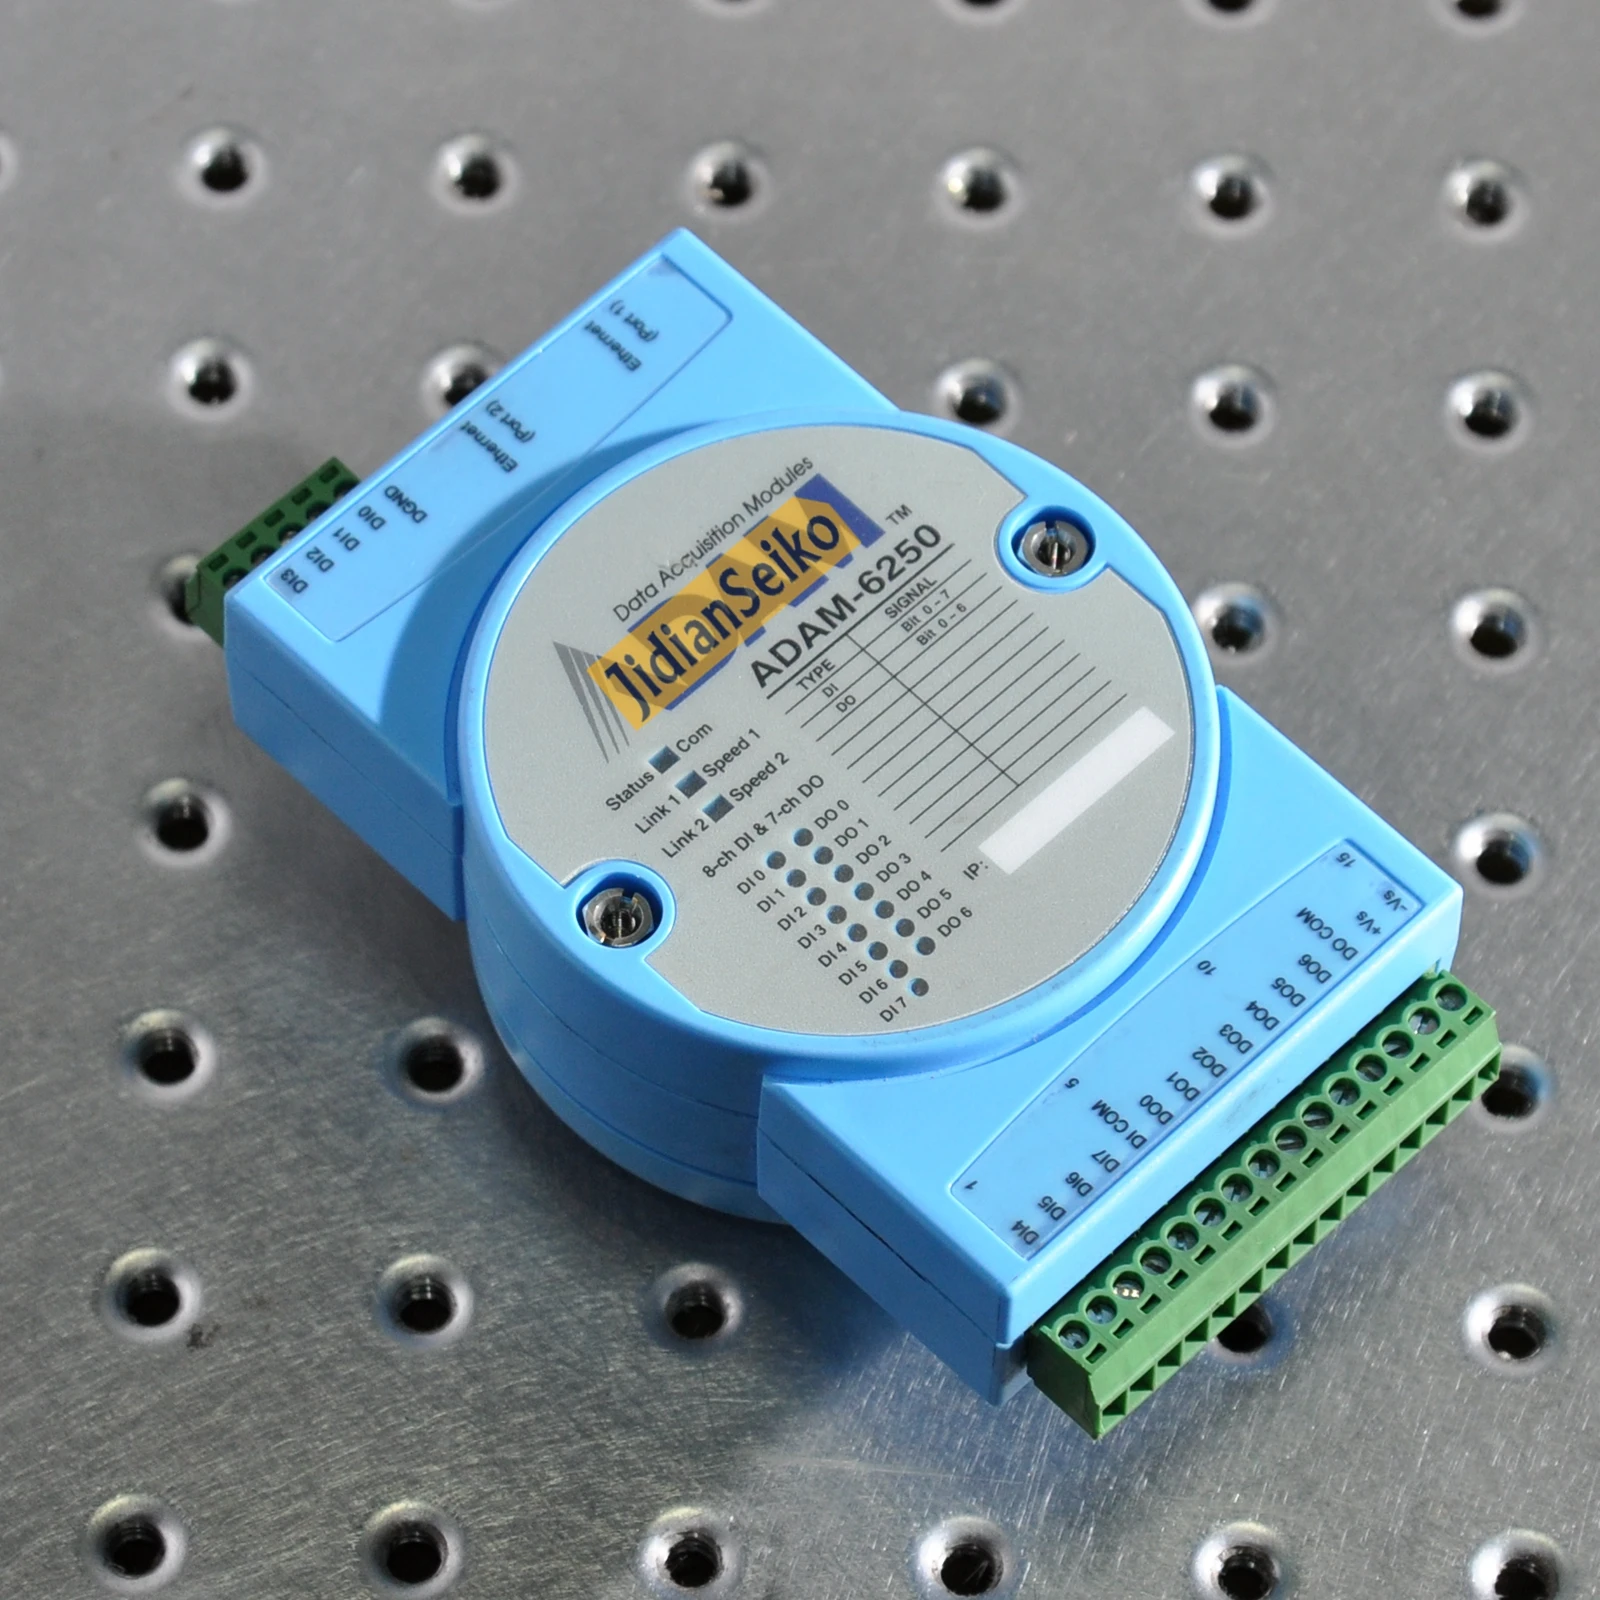 ADAM-6520 Switch Ethernet industriale non gestito a 5 porte ADAM-6250 modulo i/o digitale isolato a 15 canali che supporta Modbus TCP